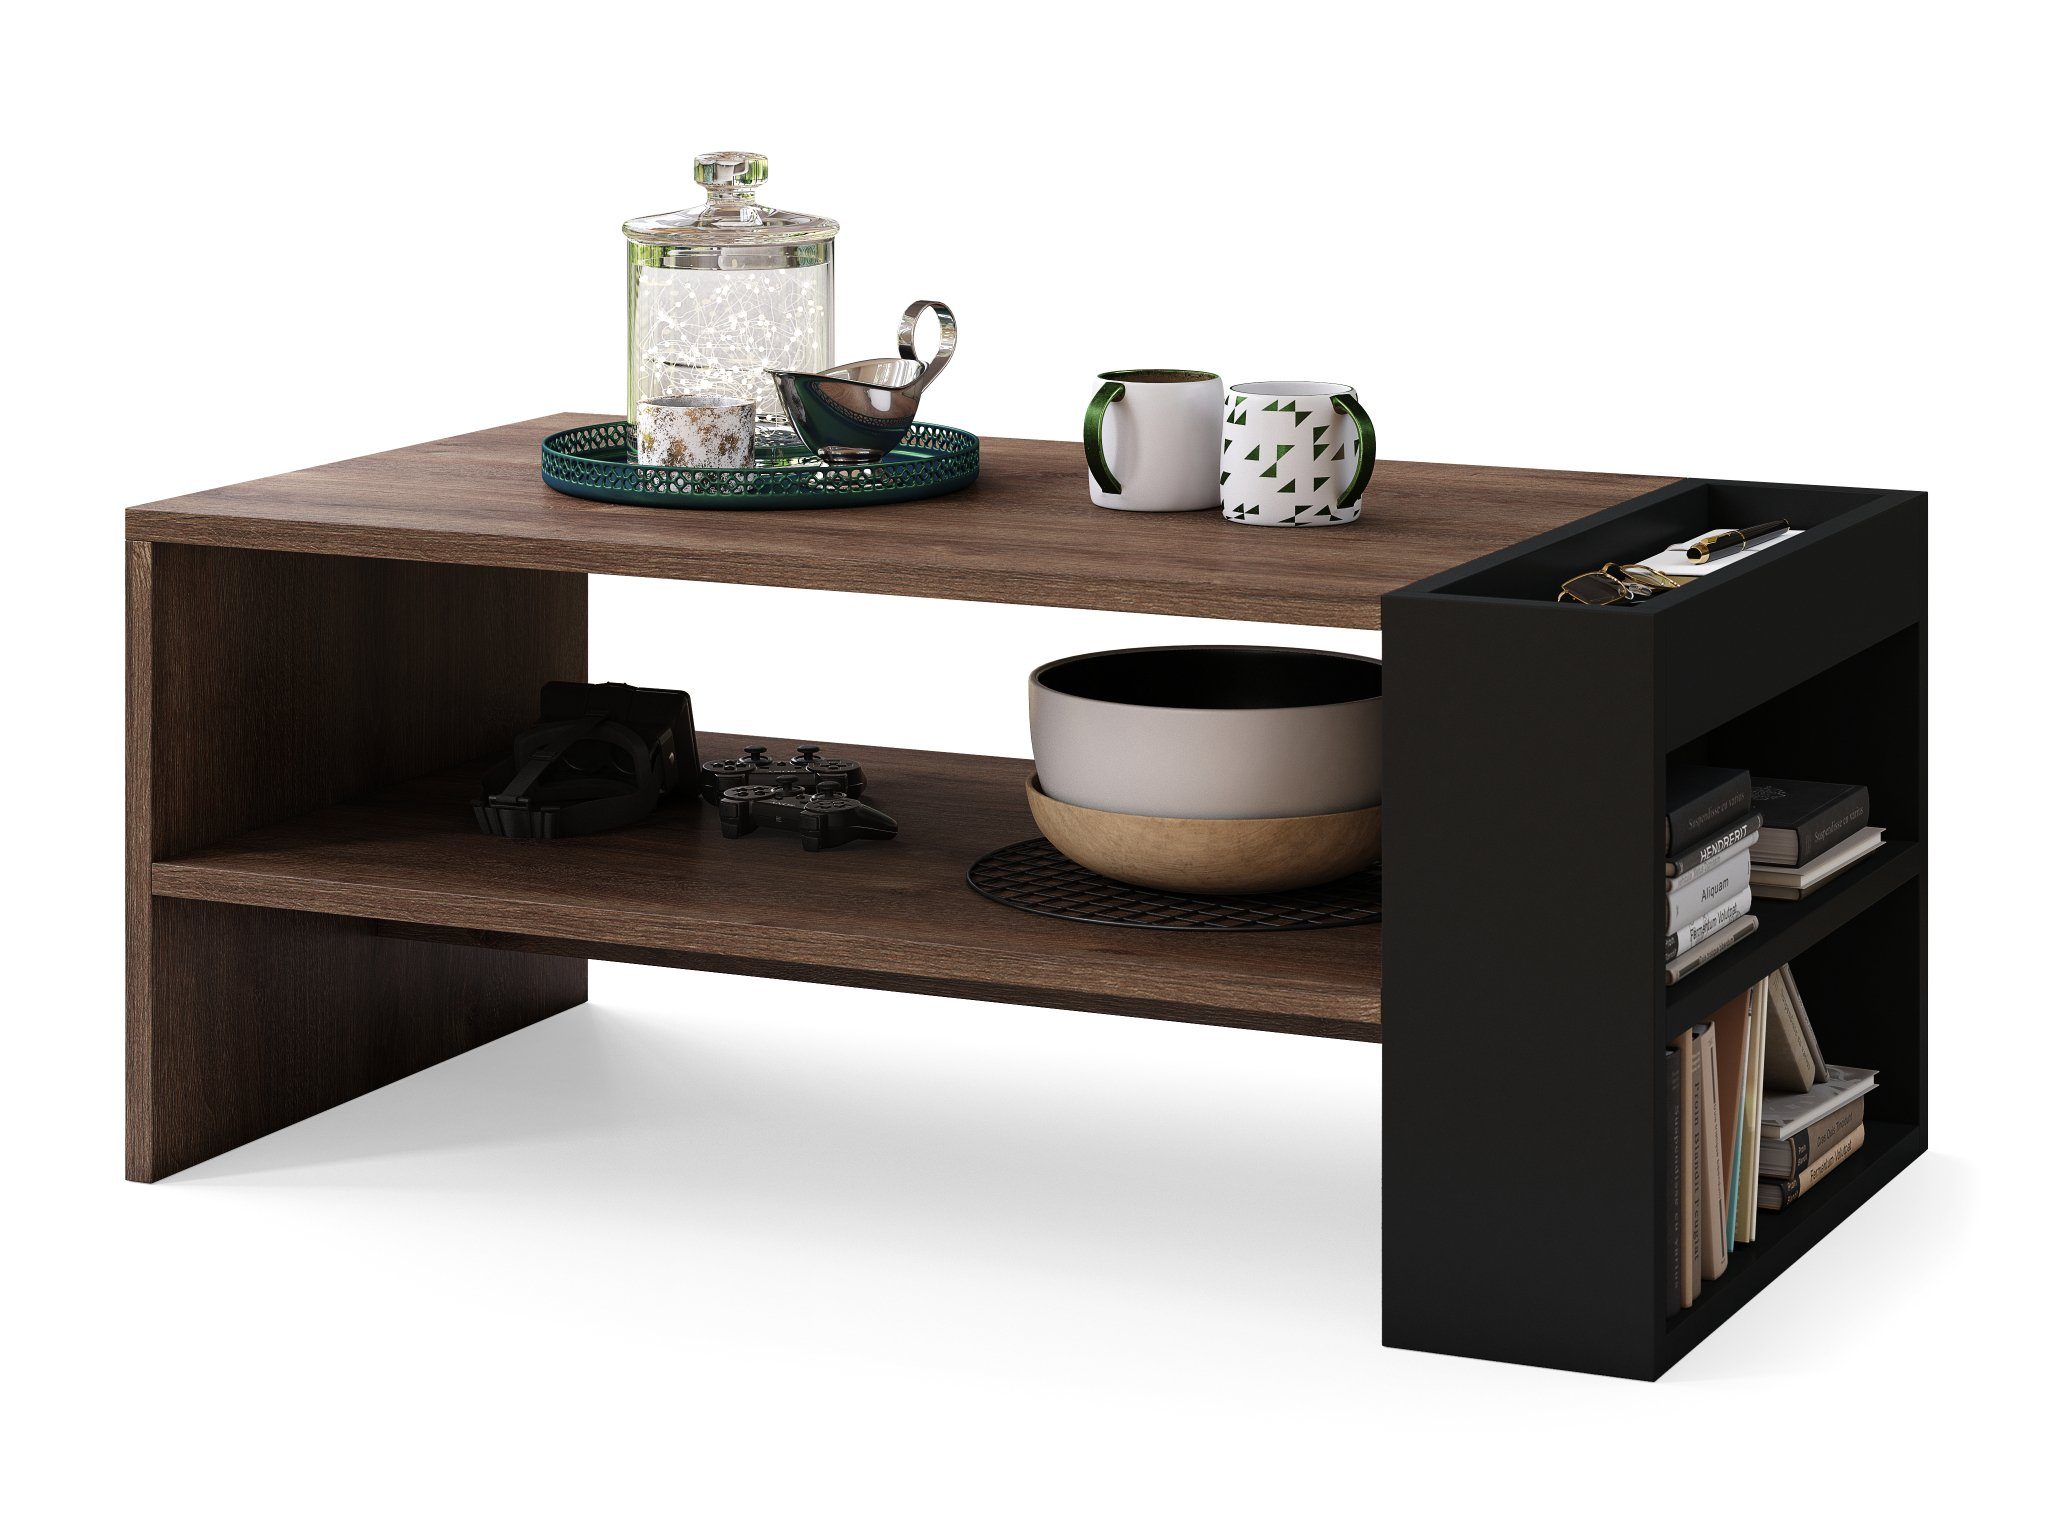 matt Design dunkel Wohnzimmertisch designimpex Couchtisch Tisch - Ablagefläche Nefri mit Schwarz Eiche Couchtisch